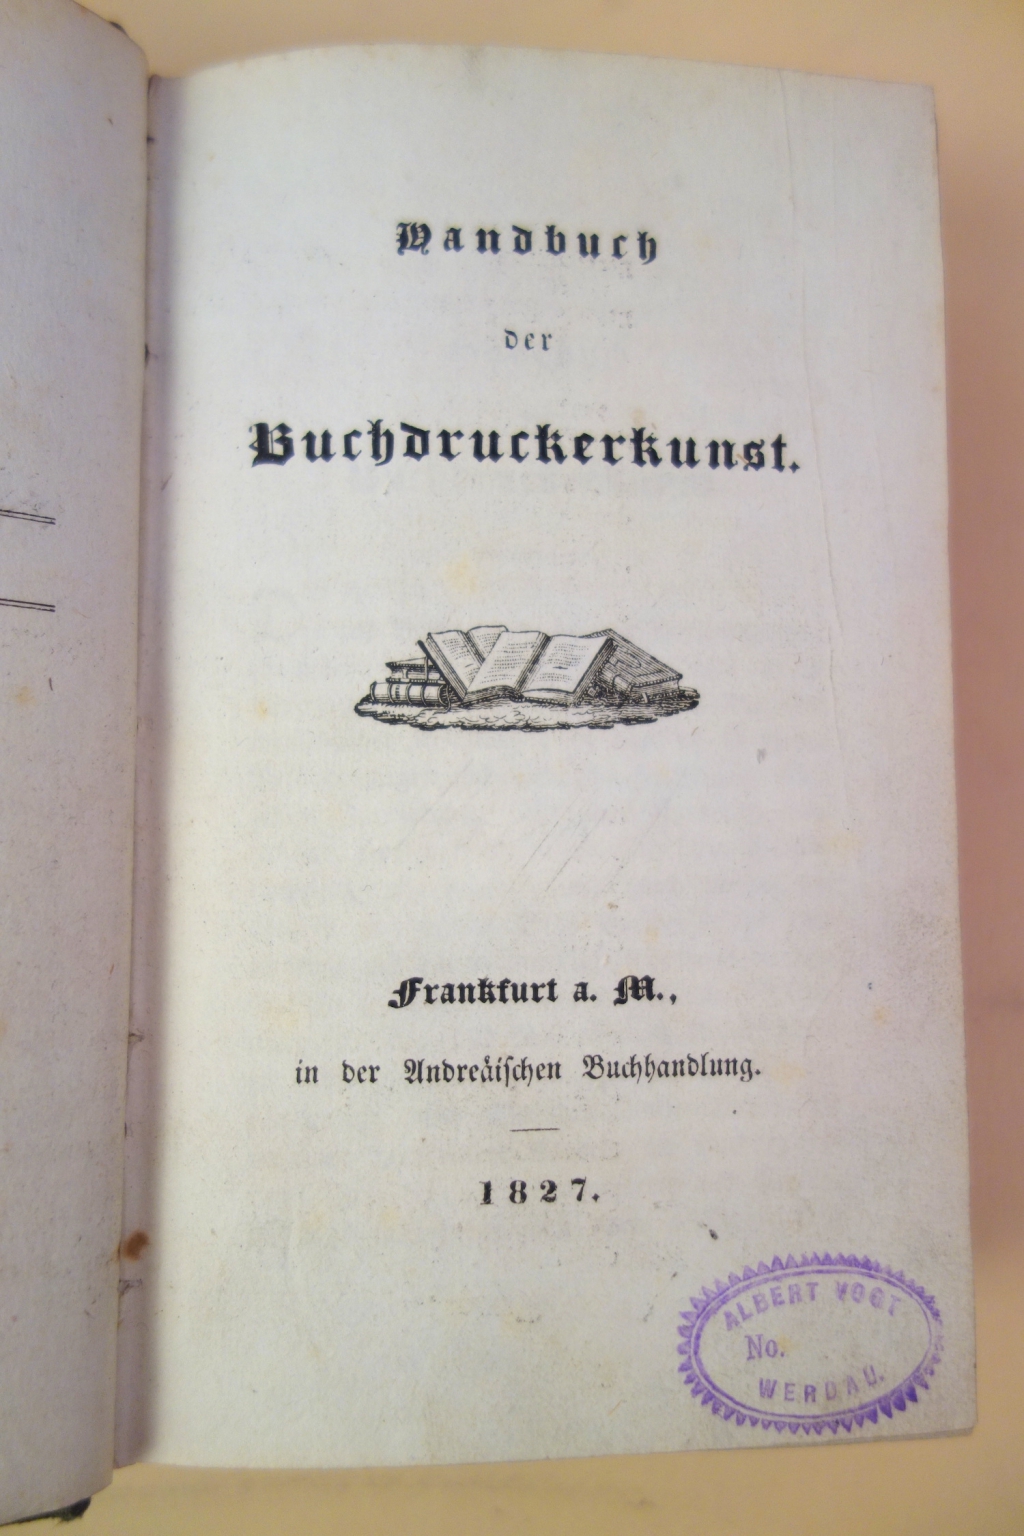 Title page of Handbuch der Buchdruckerkunst